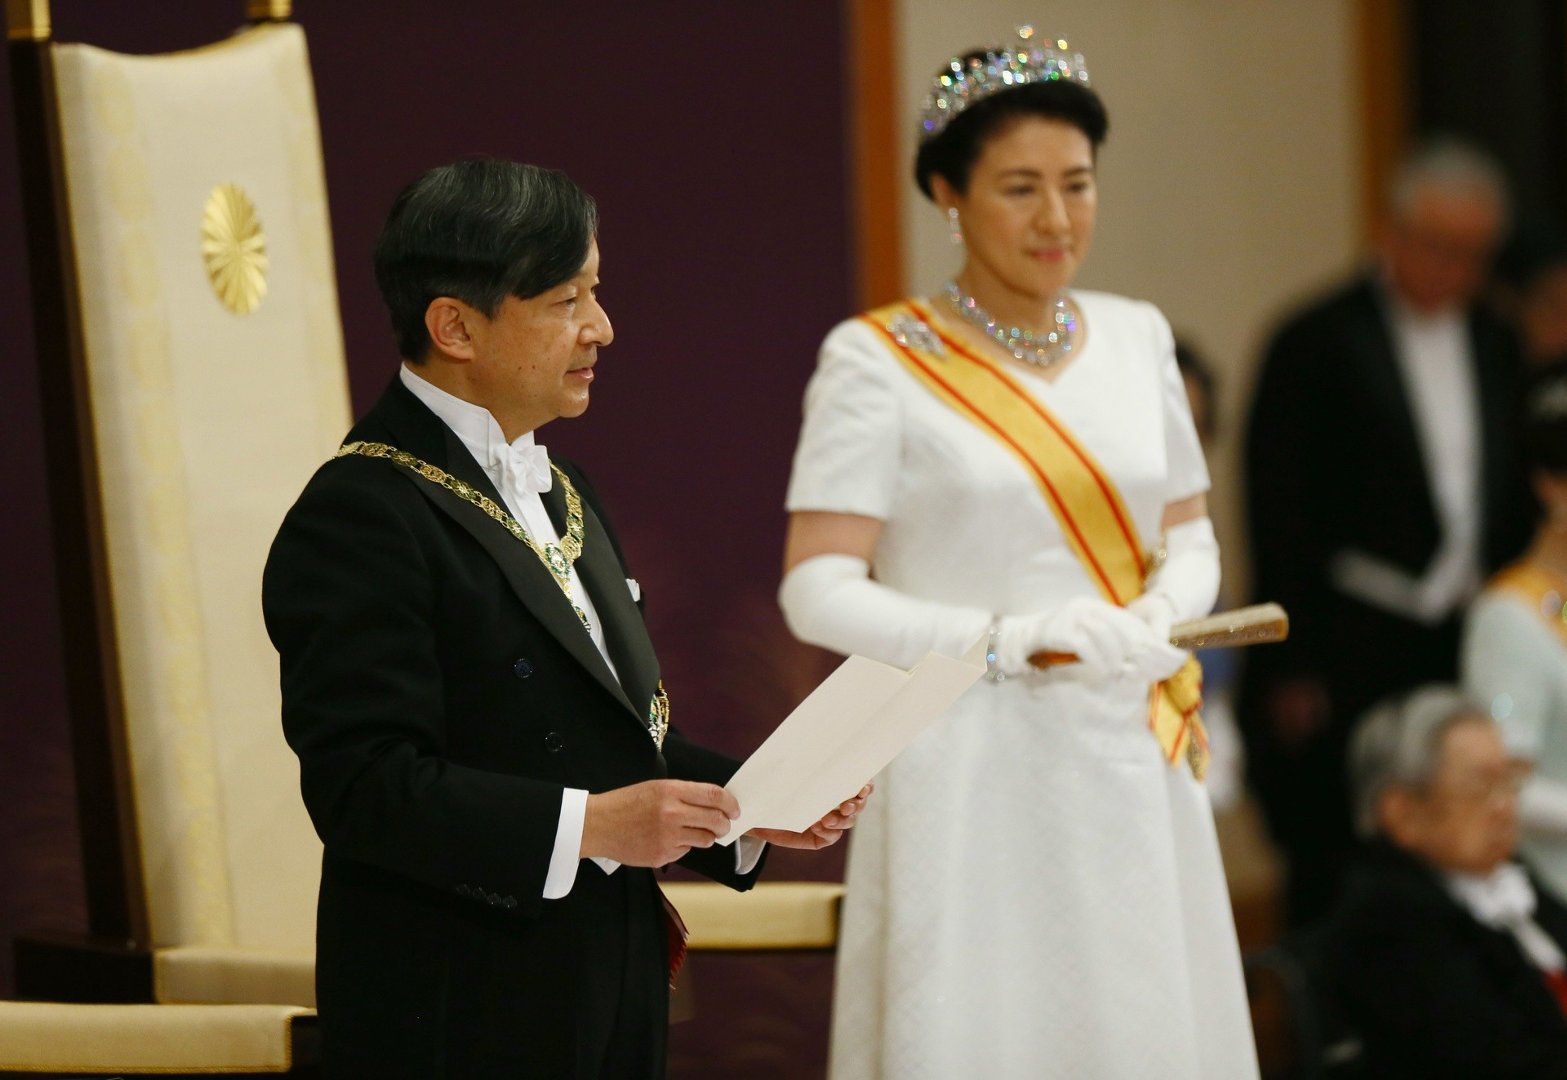 cesarz-naruhito-oficjalnie-wst-puje-na-chryzantemowy-tron-japonii